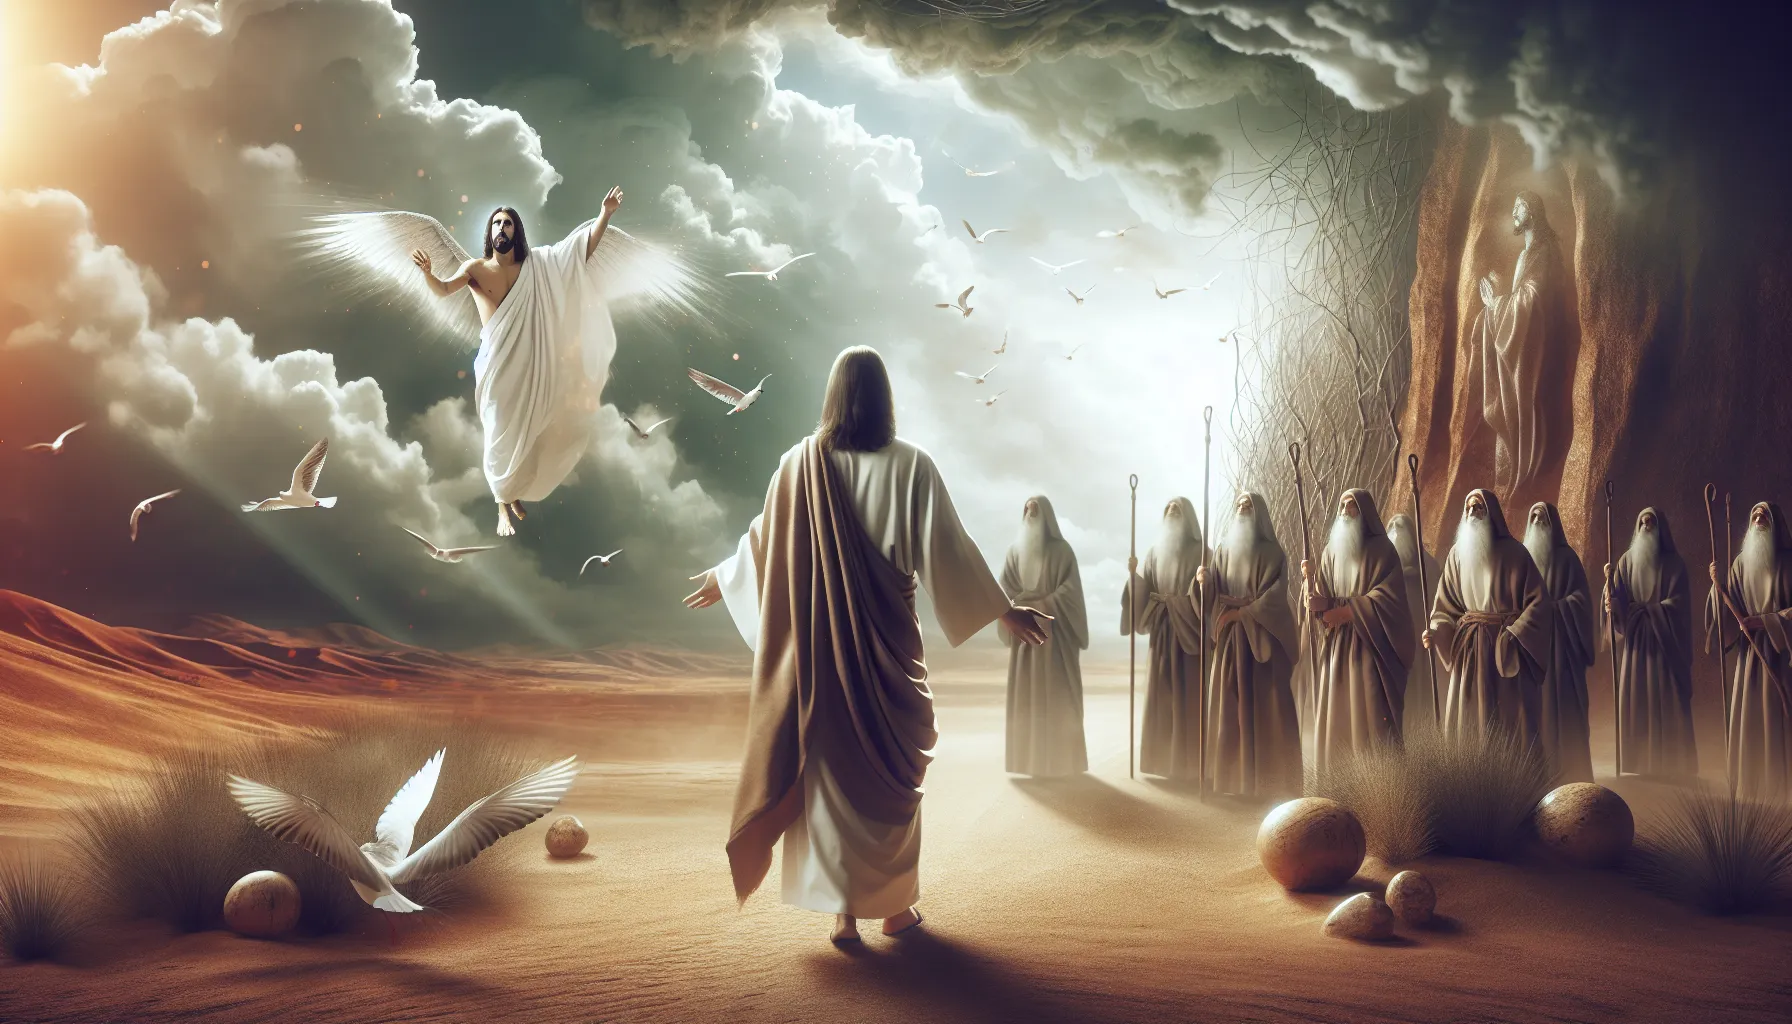 Representación visual de una profecía del Antiguo Testamento cumplida en Jesús.